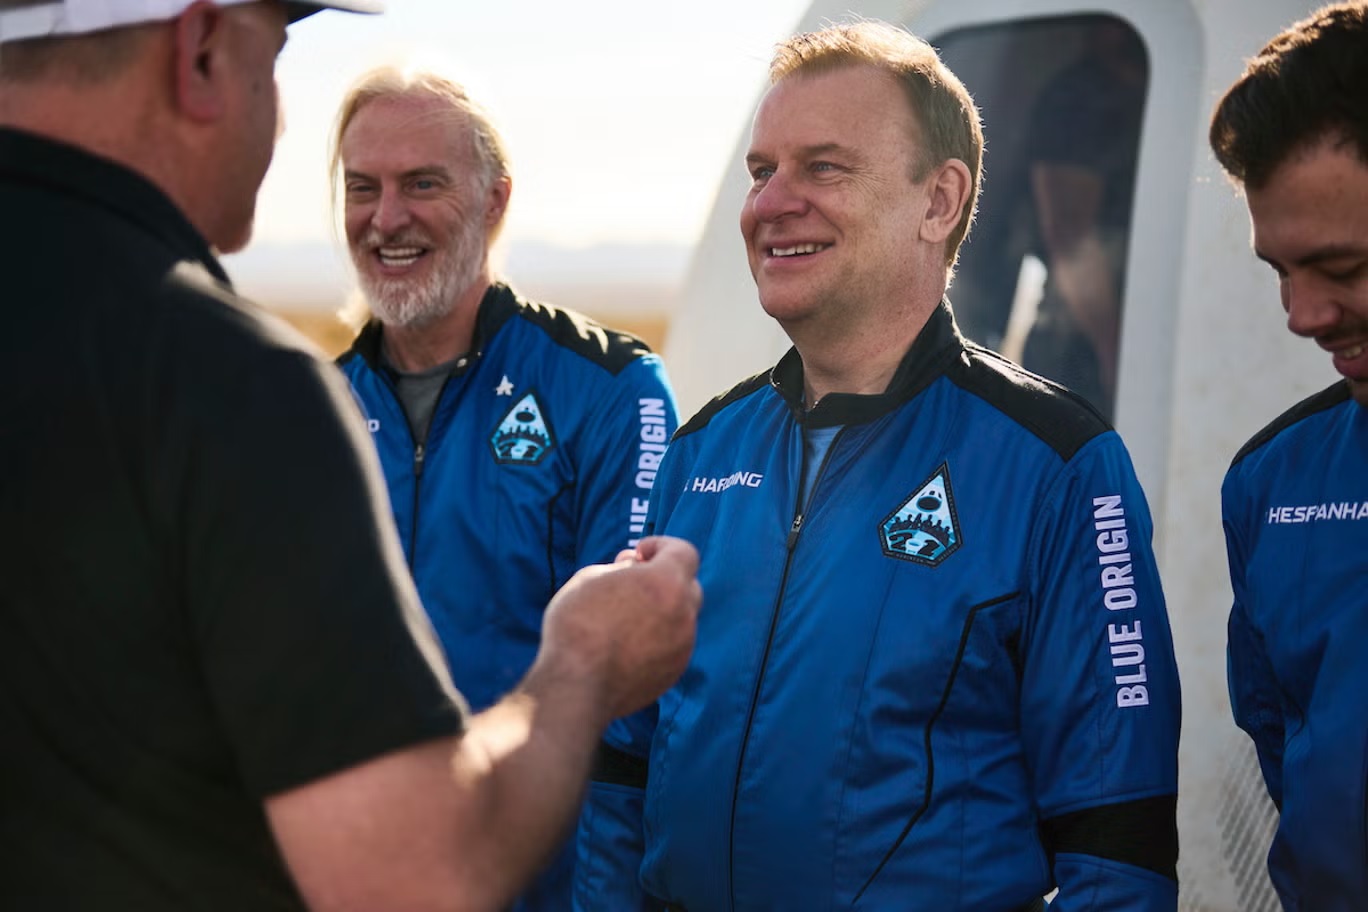 هاميش هاردينغ يتلقى دبوس رائد فضاء من شركة "بلو أوريجين" في تكساس بعد رحلة إلى الفضاء في 4 يونيو 2022 (أ ب)